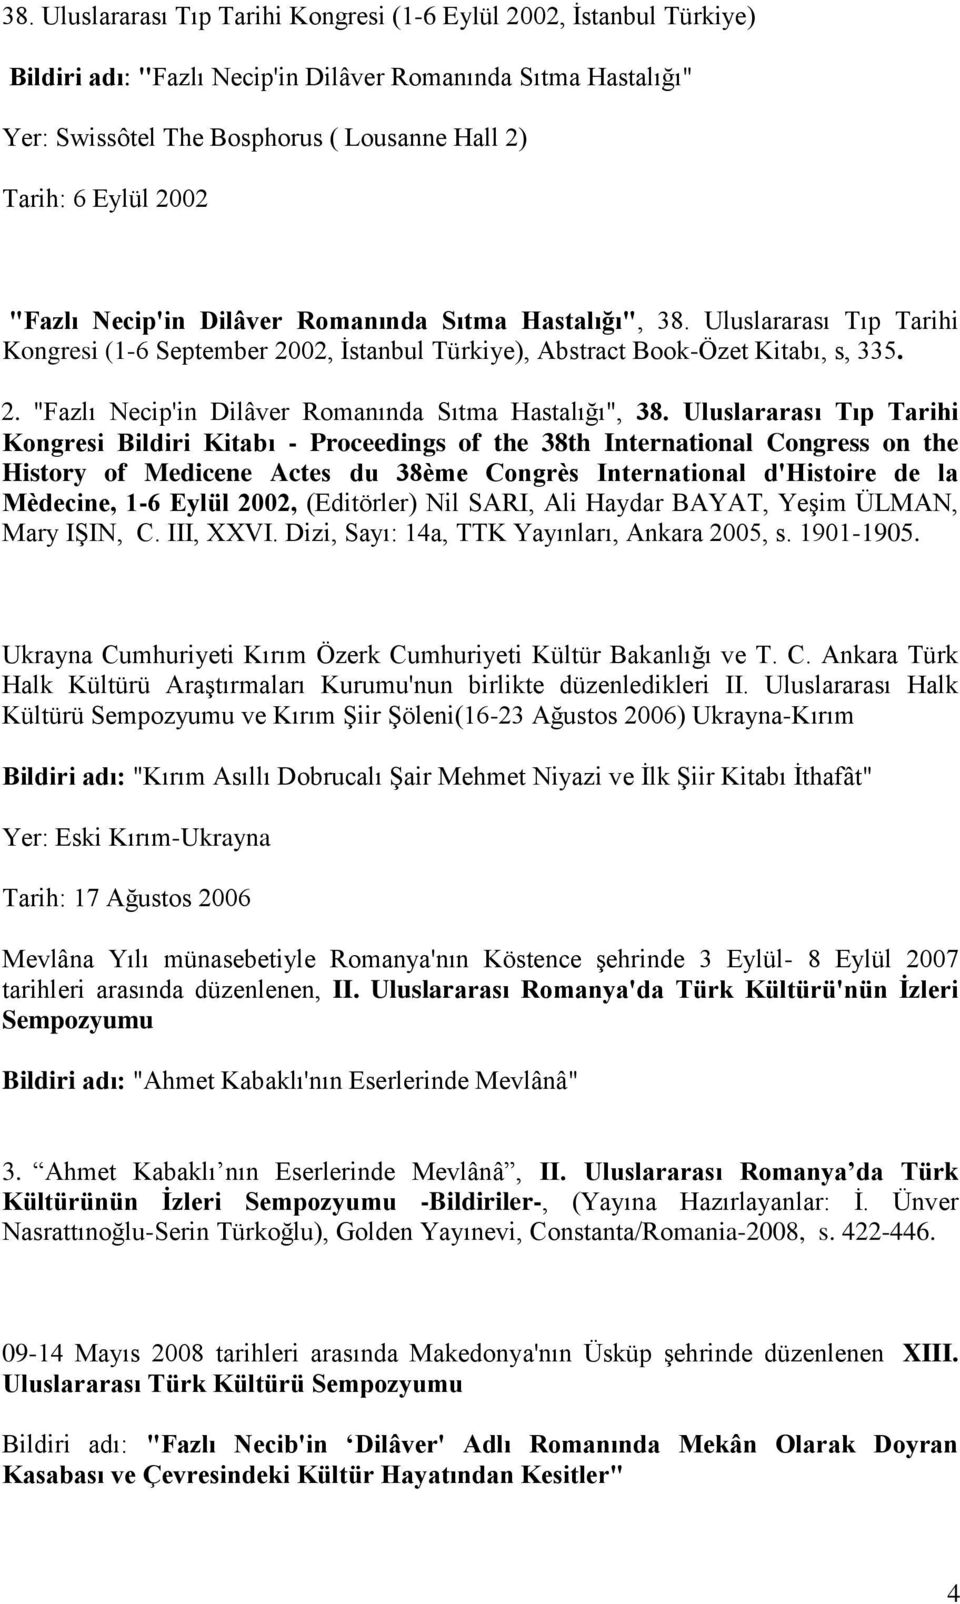 Uluslararası Tıp Tarihi Kongresi (1-6 September 2002, İstanbul Türkiye), Abstract Book-Özet Kitabı, s, 335. 2. "Fazlı Necip'in Dilâver Romanında Sıtma Hastalığı", 38.